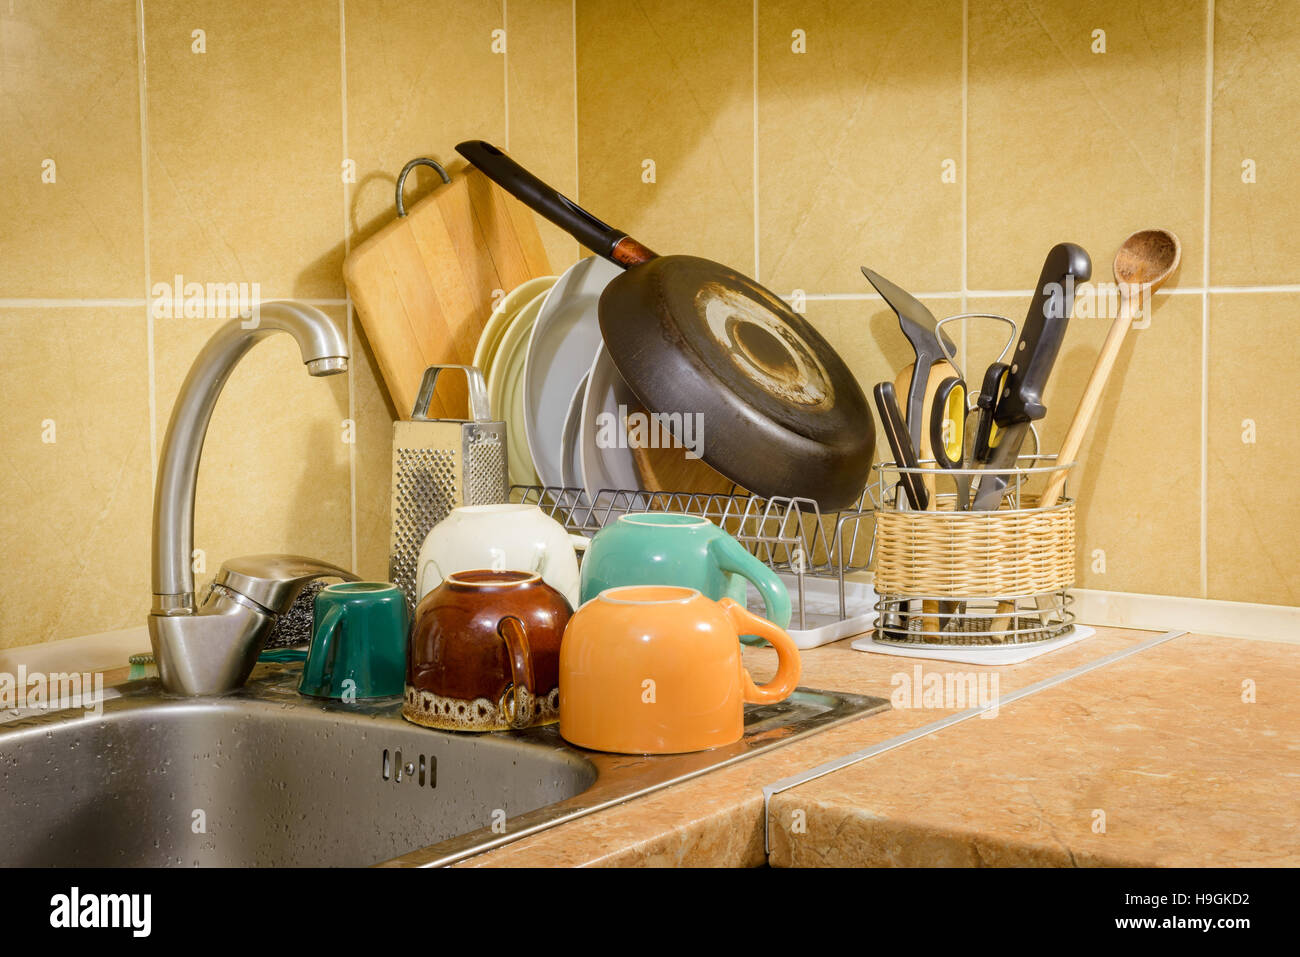 Plats, tasses, verres, assiettes, fourchettes, couteaux et cuillères sont le séchage près de l'évier, après qu'ils ont été lavés dans la cuisine Banque D'Images